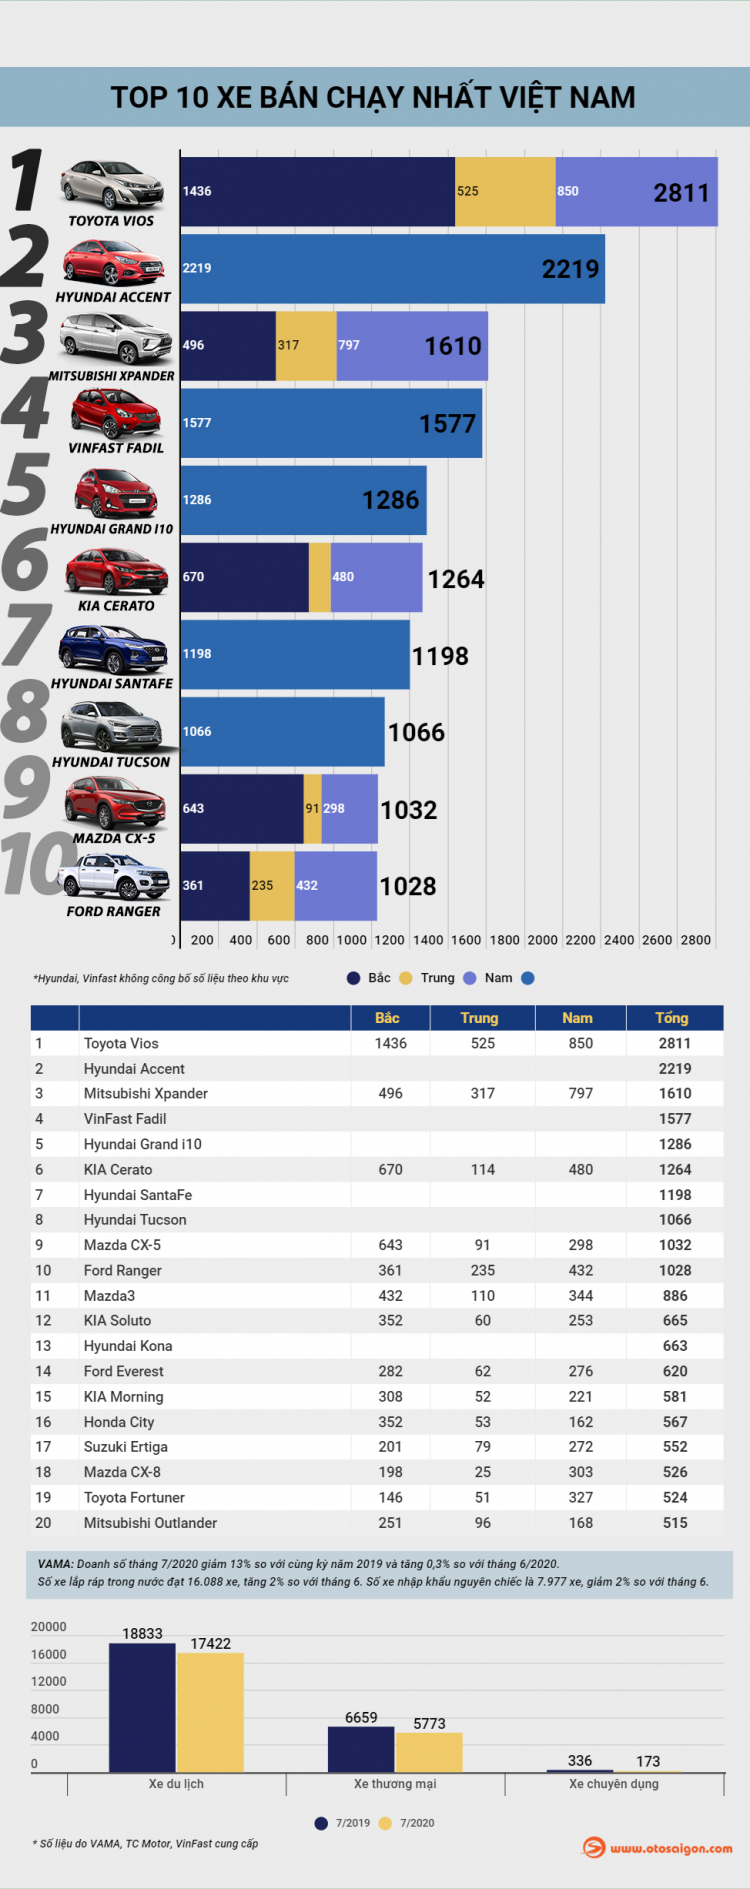 [Infographic] Top 10 xe bán chạy tại Việt Nam tháng 7/2020: Toyota và Honda mất nhiều vị trí